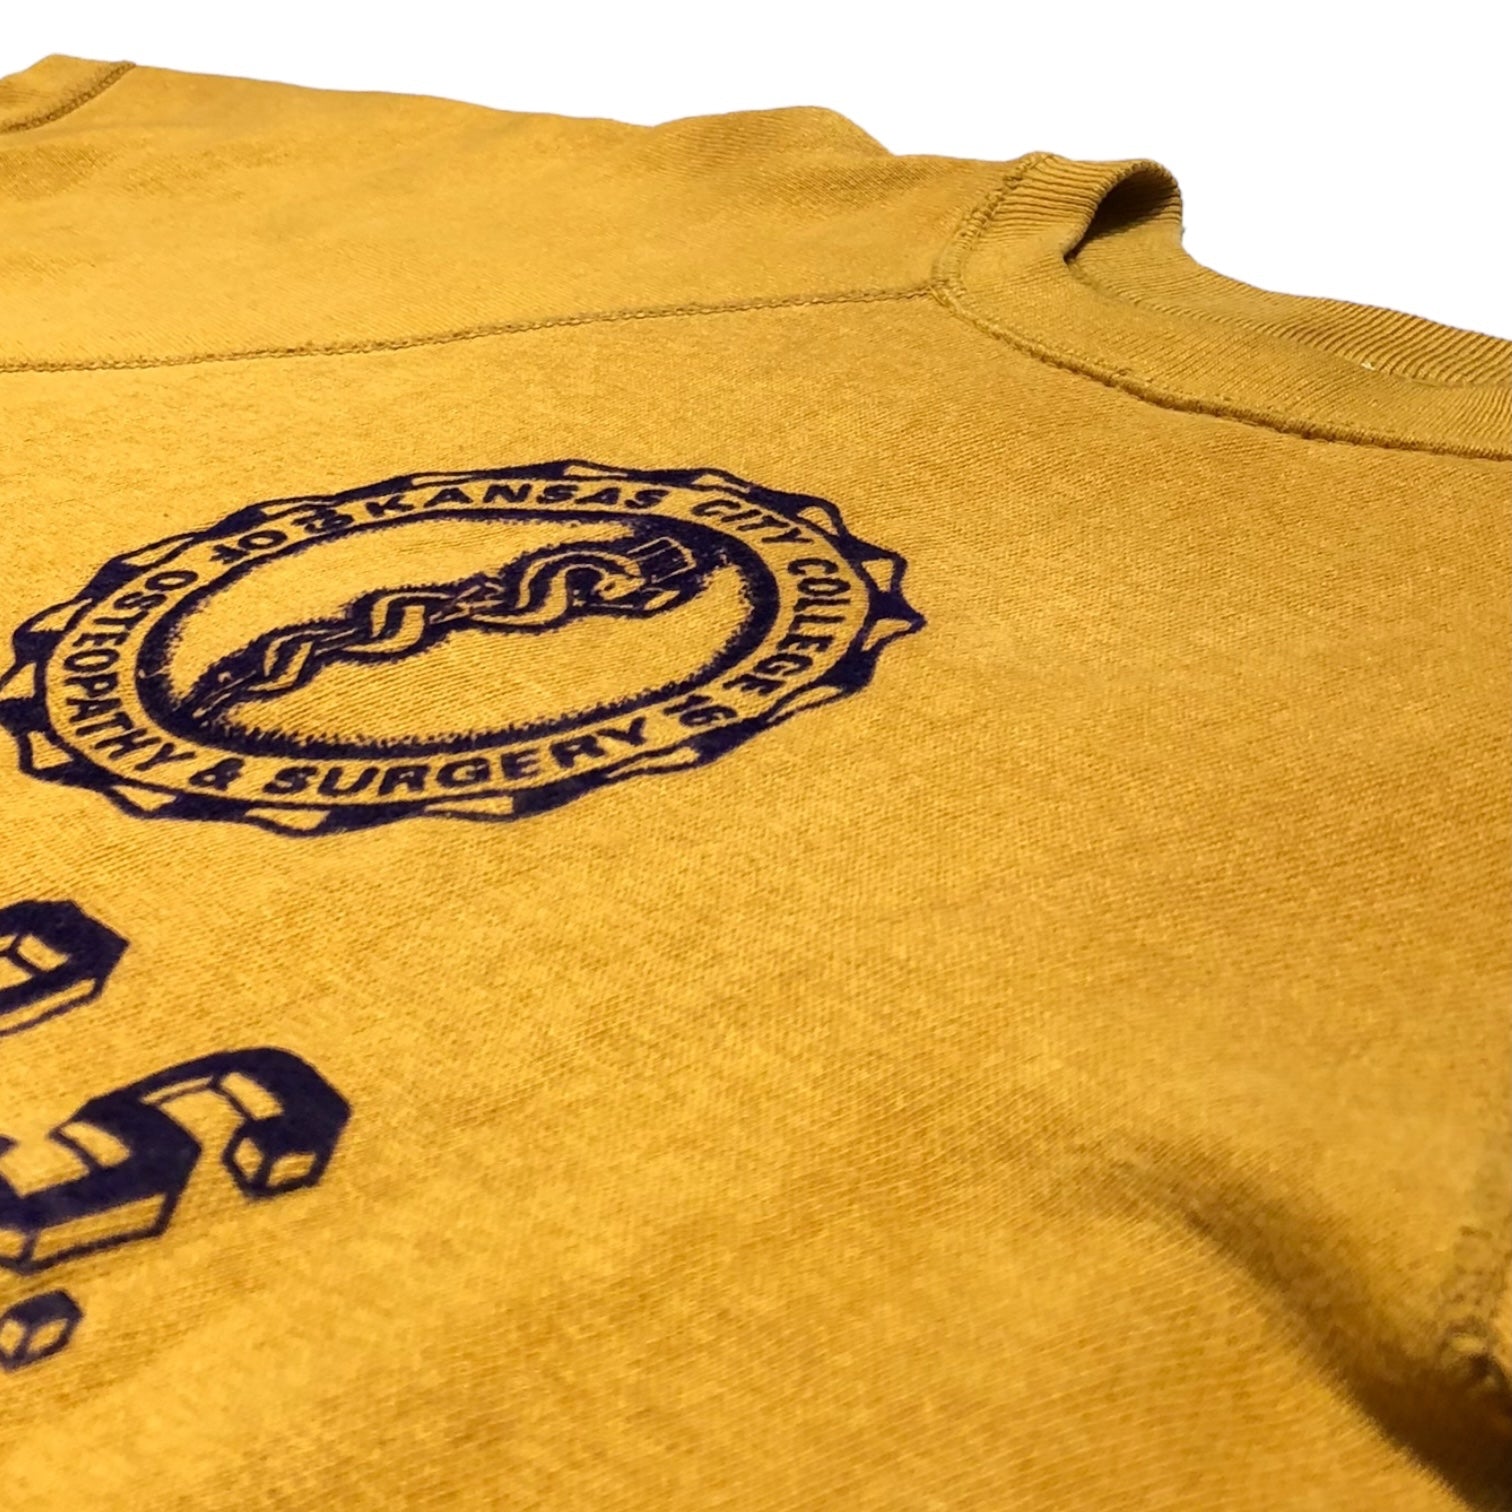 ARTEX(アルテックス アーテックス) 60's "KANSAS CITY COLLEGE" S/S sweat shirt カレッジ プリント 半袖 スウェット M イエロー 60年代 ヴィンテージ